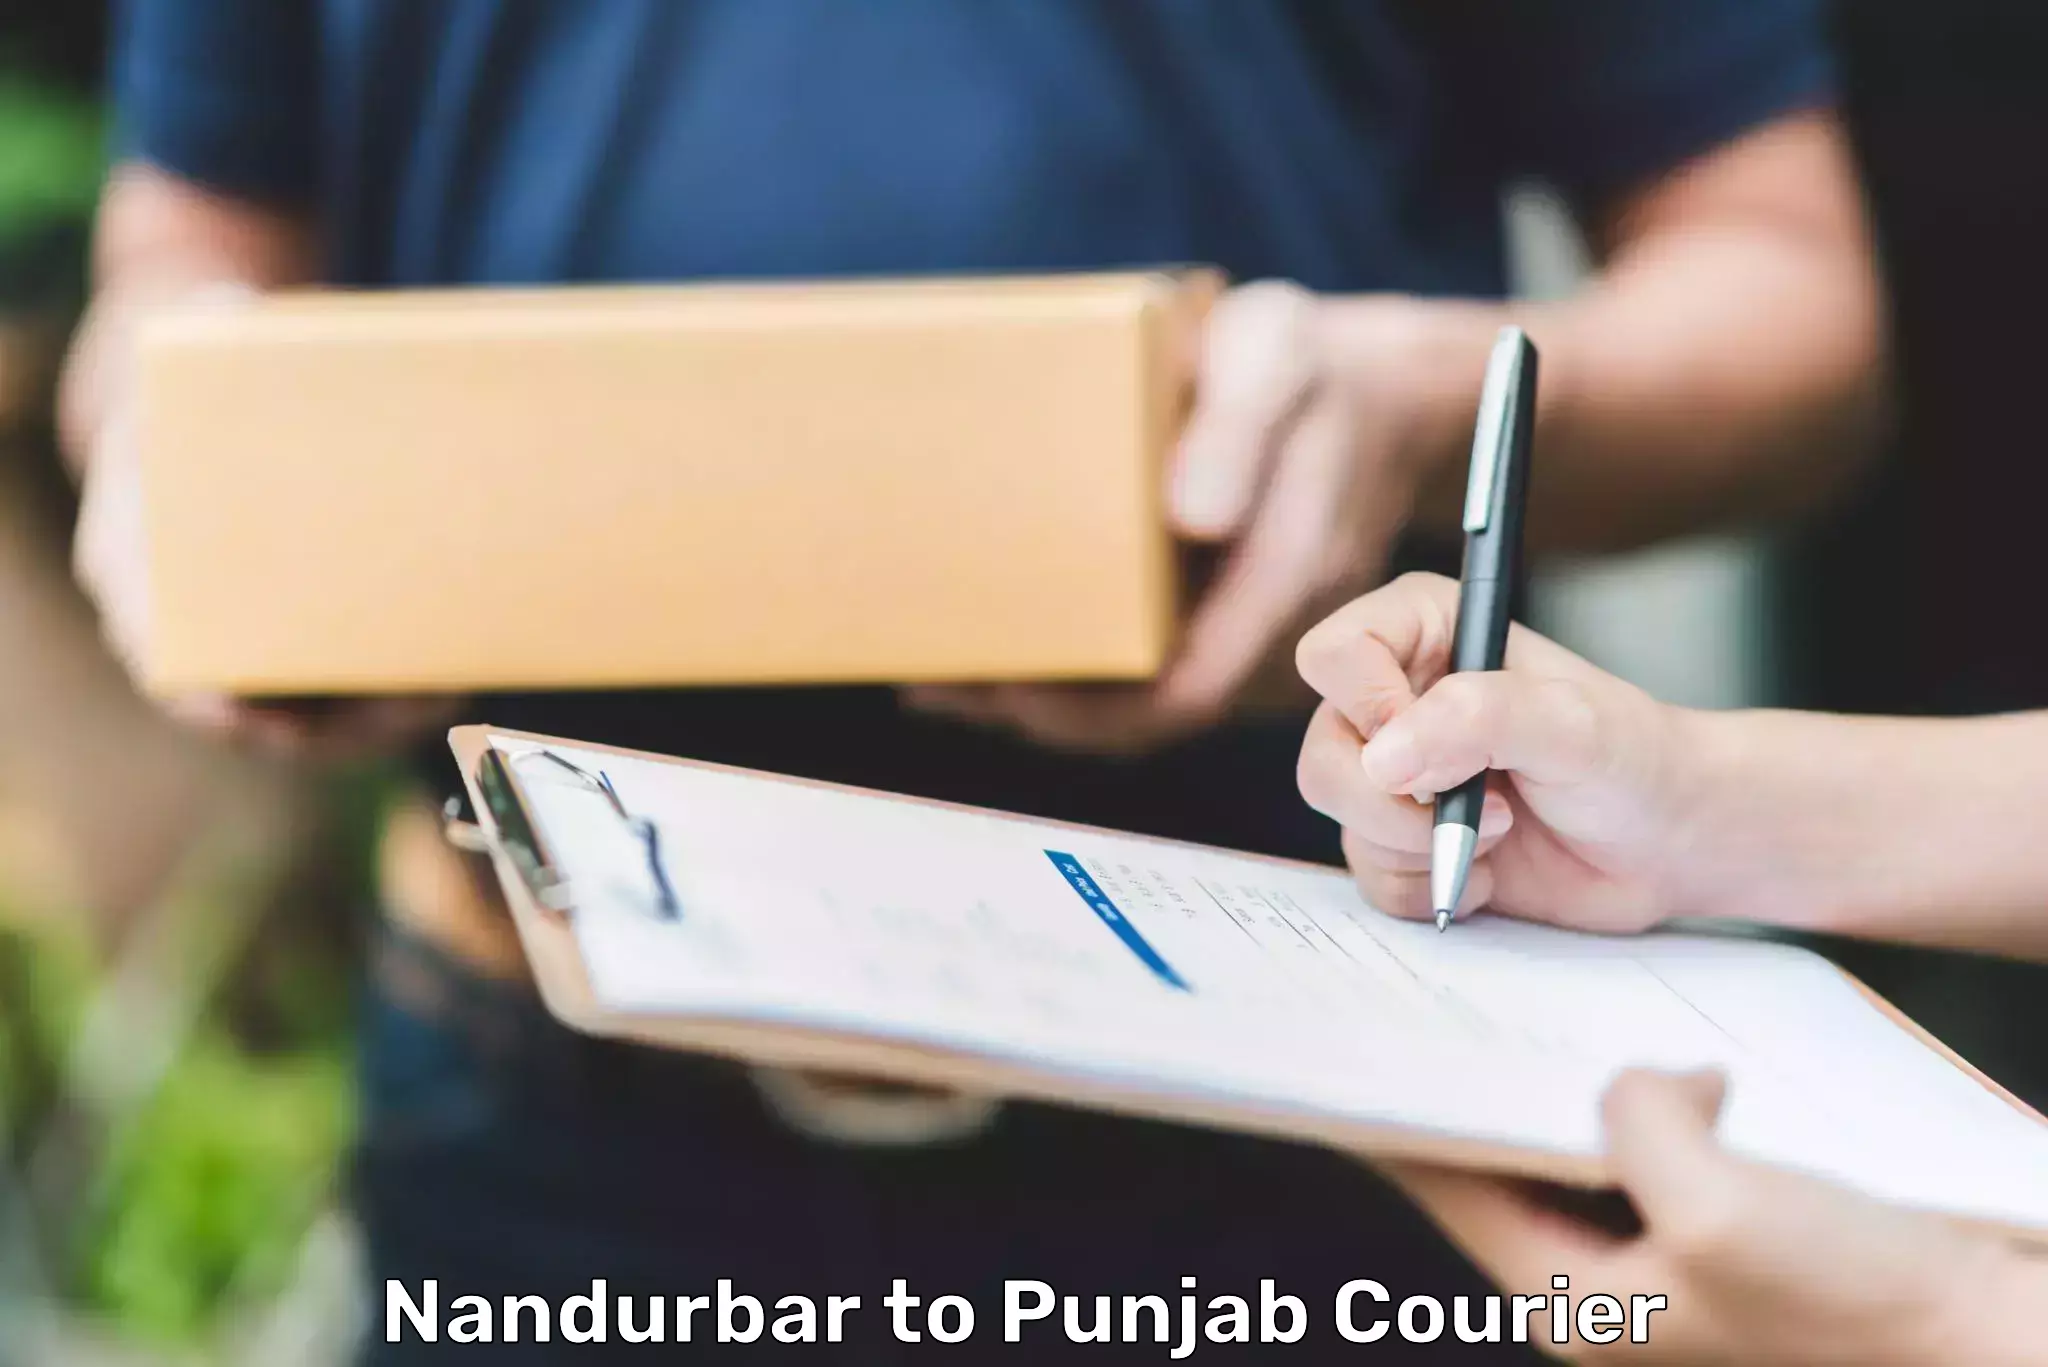 Diverse delivery methods in Nandurbar to Jalandhar